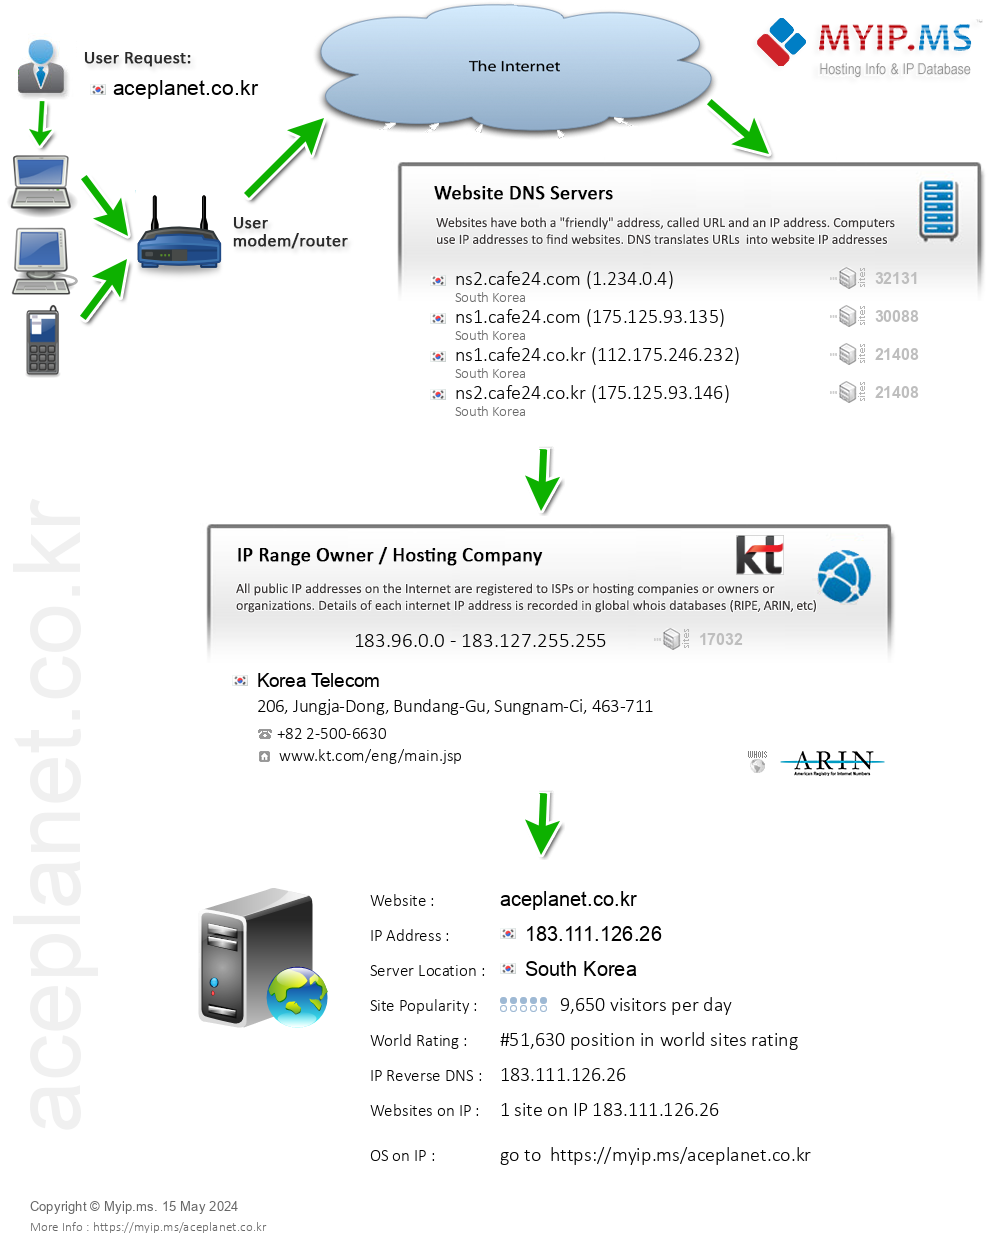 Aceplanet.co.kr - Website Hosting Visual IP Diagram